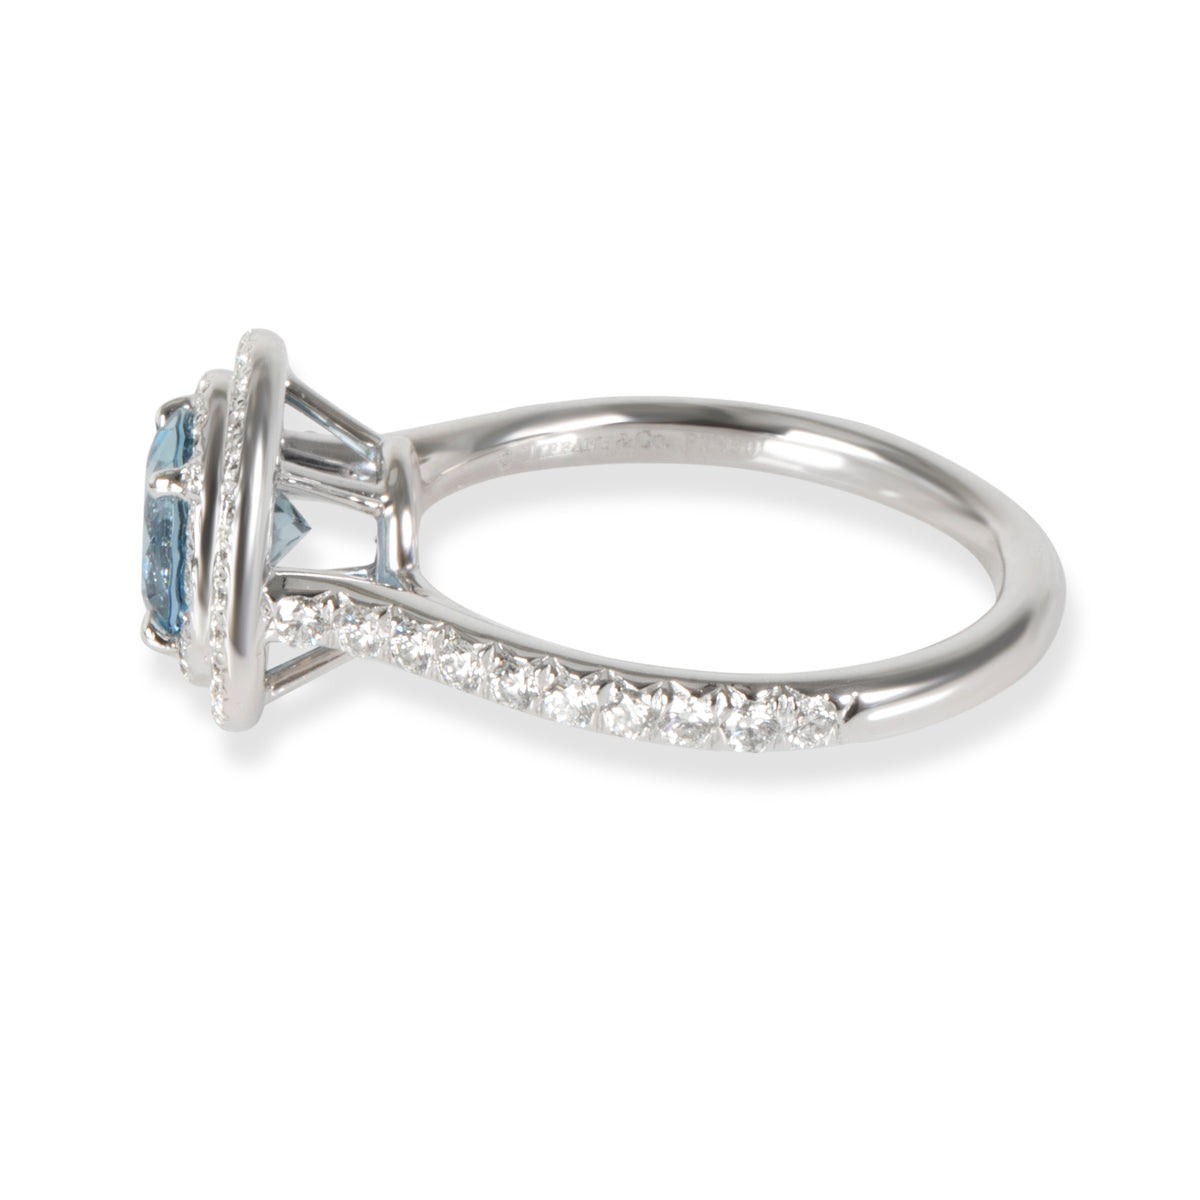 Tiffany & Co. Soleste Aquamarine Diamond Ring in 950 Platinum 0.46 CTW